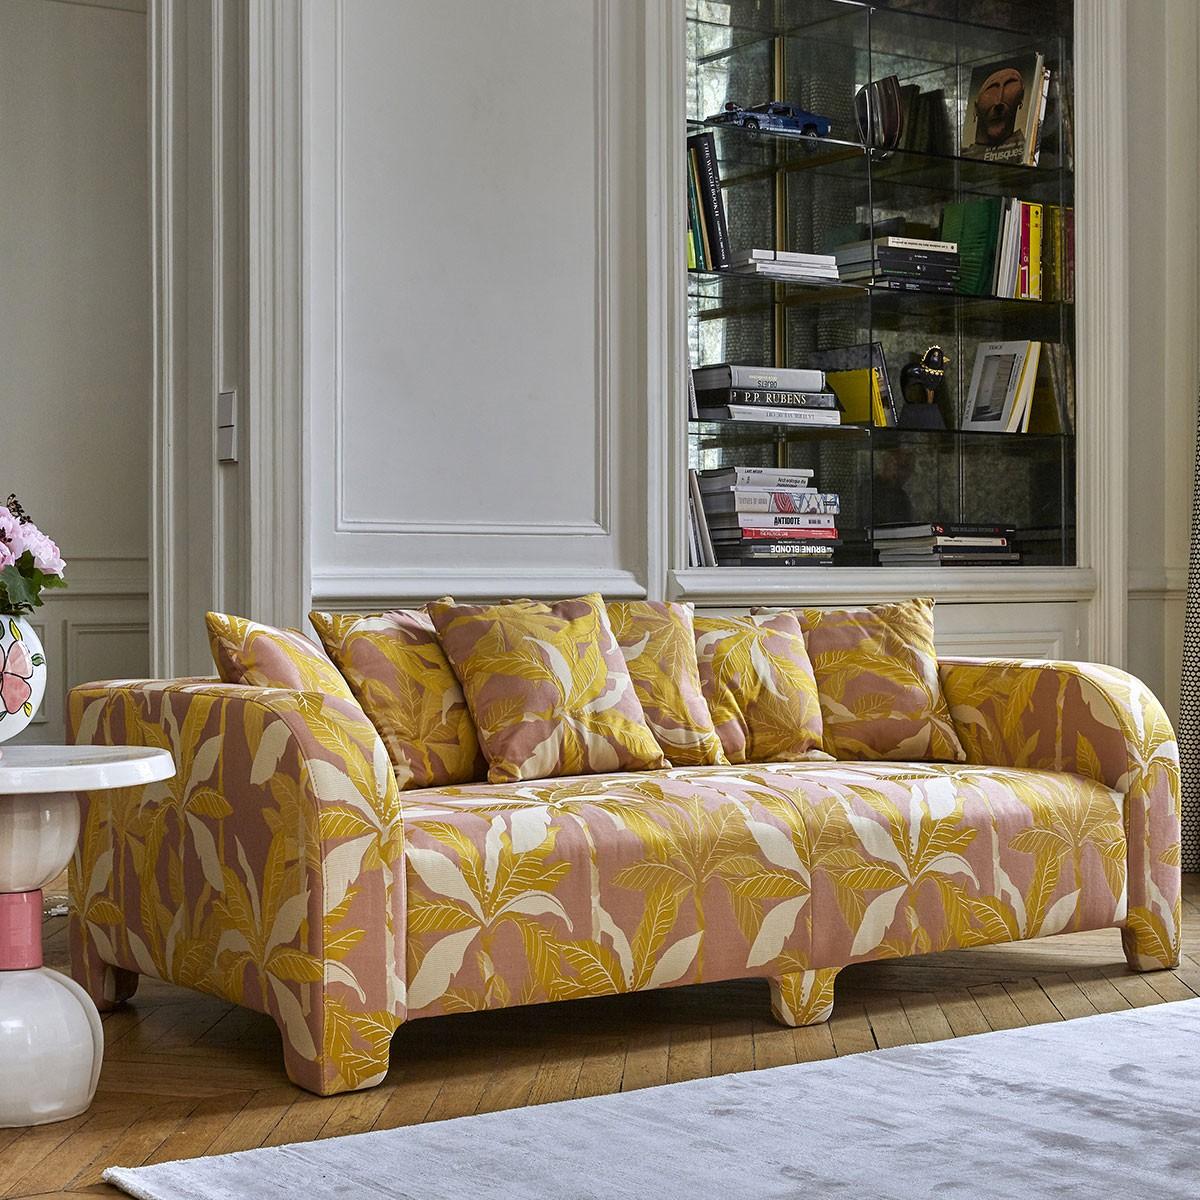 Popus Editions Graziella 3 Seater Sofa in Marina Venice Chenille Velvet Fabric In New Condition For Sale In Paris, FR